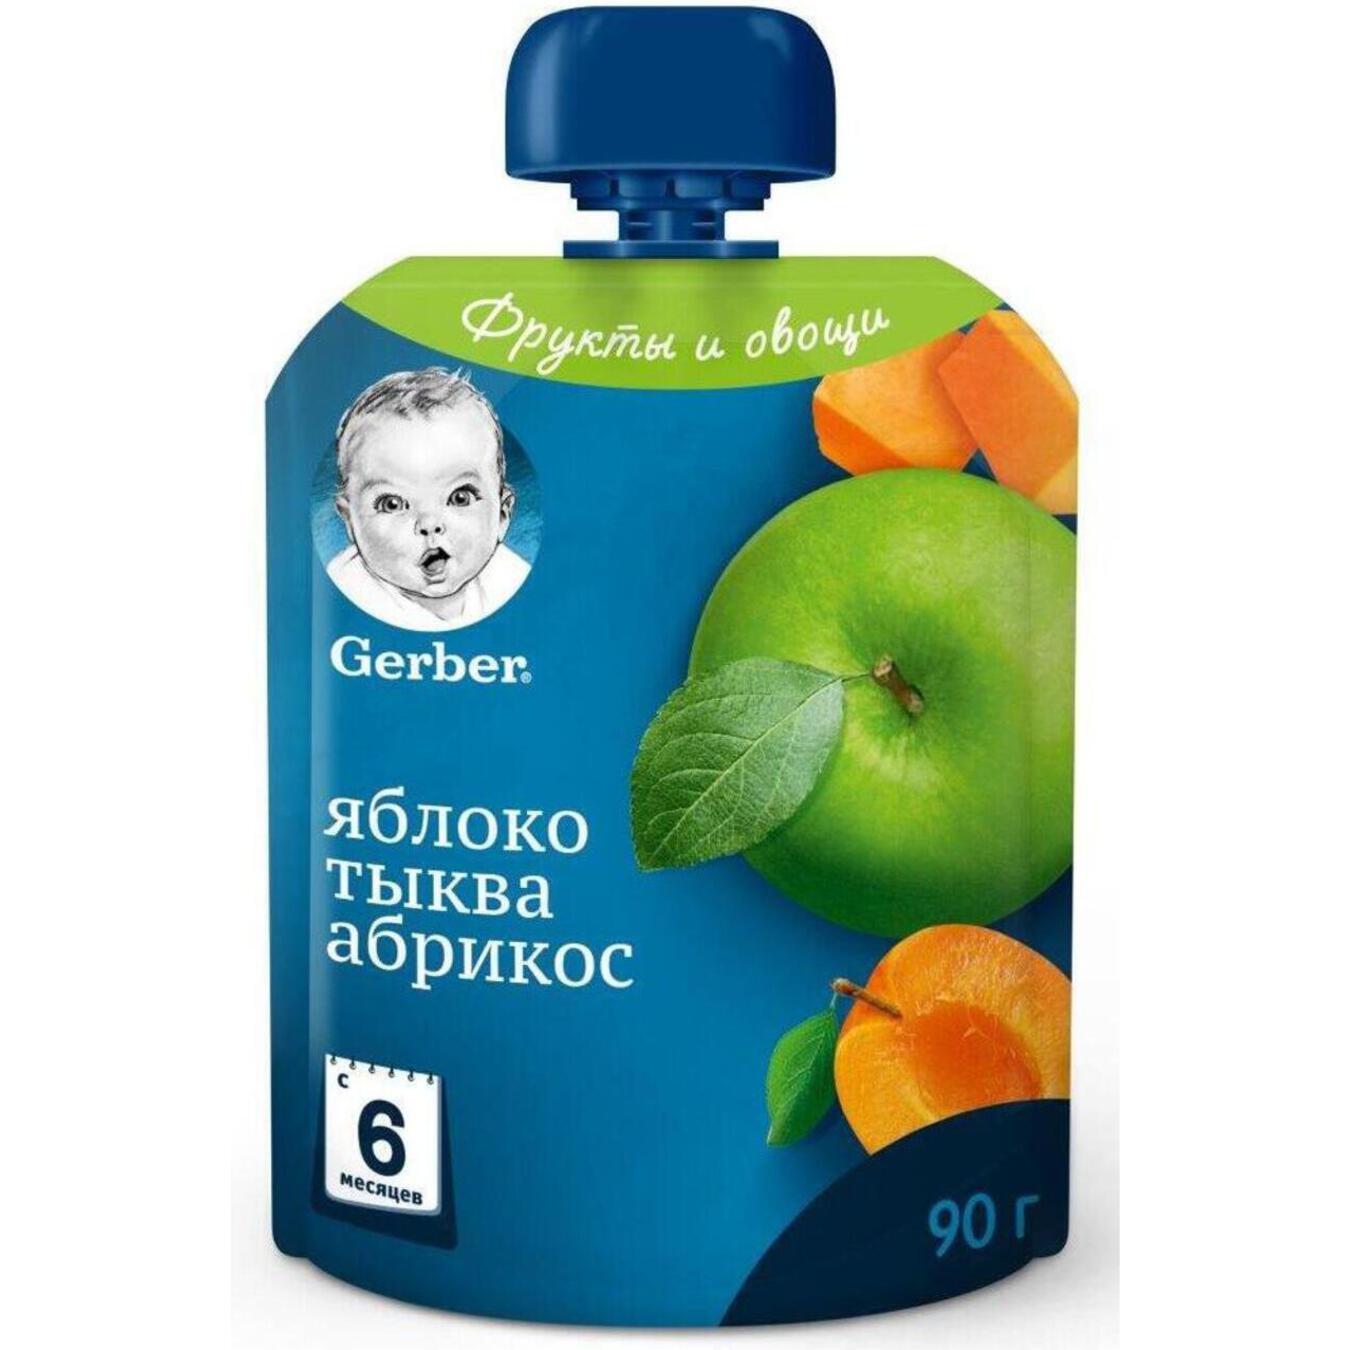 Пюре Gerber яблоко тыква абрикос для детей с 6 месяцев 90г